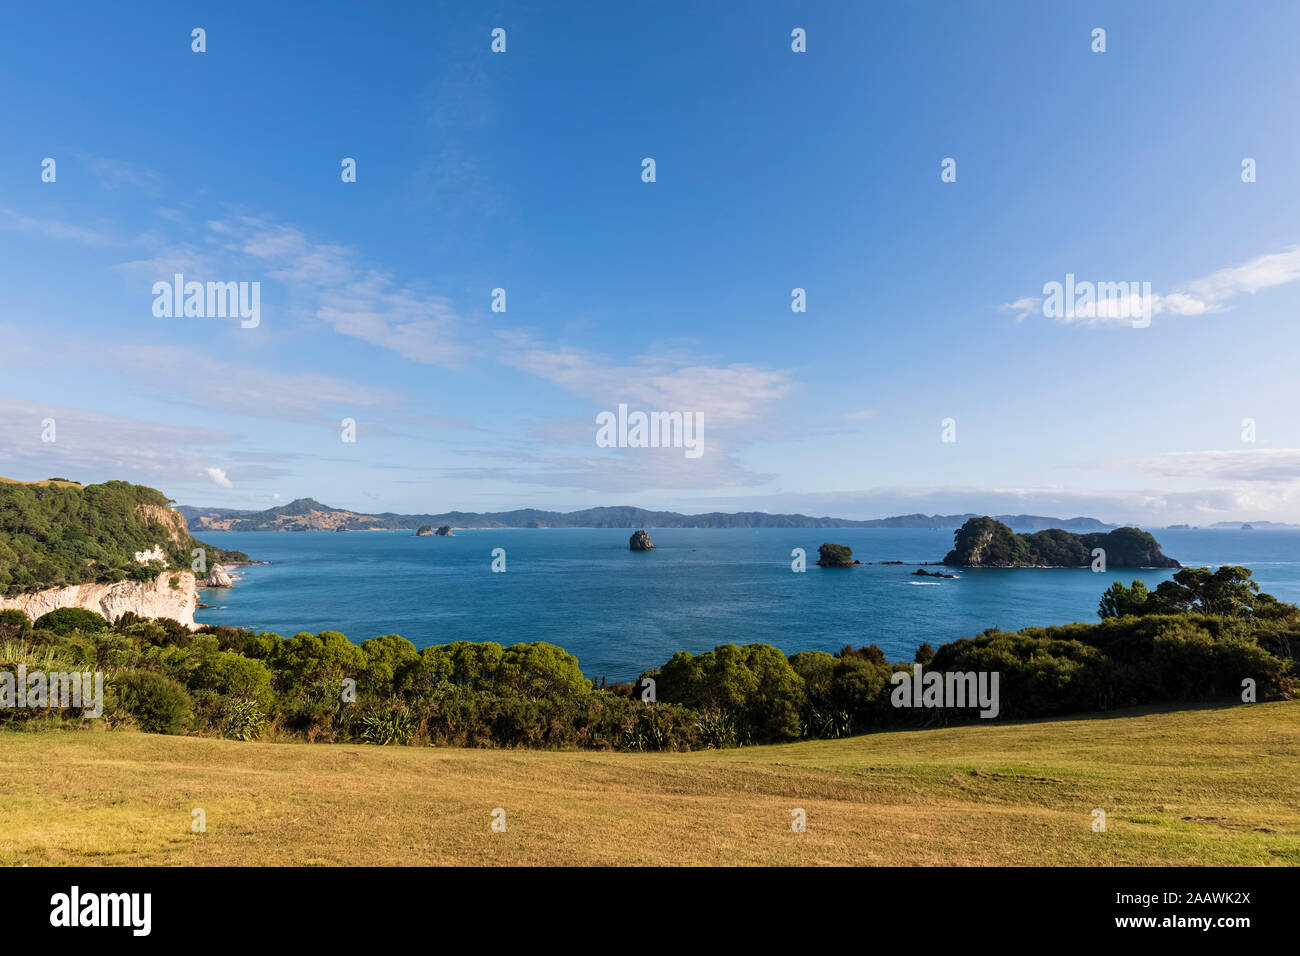 Nueva Zelanda, Isla Norte, Waikato, árboles a lo largo del litoral de la Bahía de piedras preciosas Foto de stock